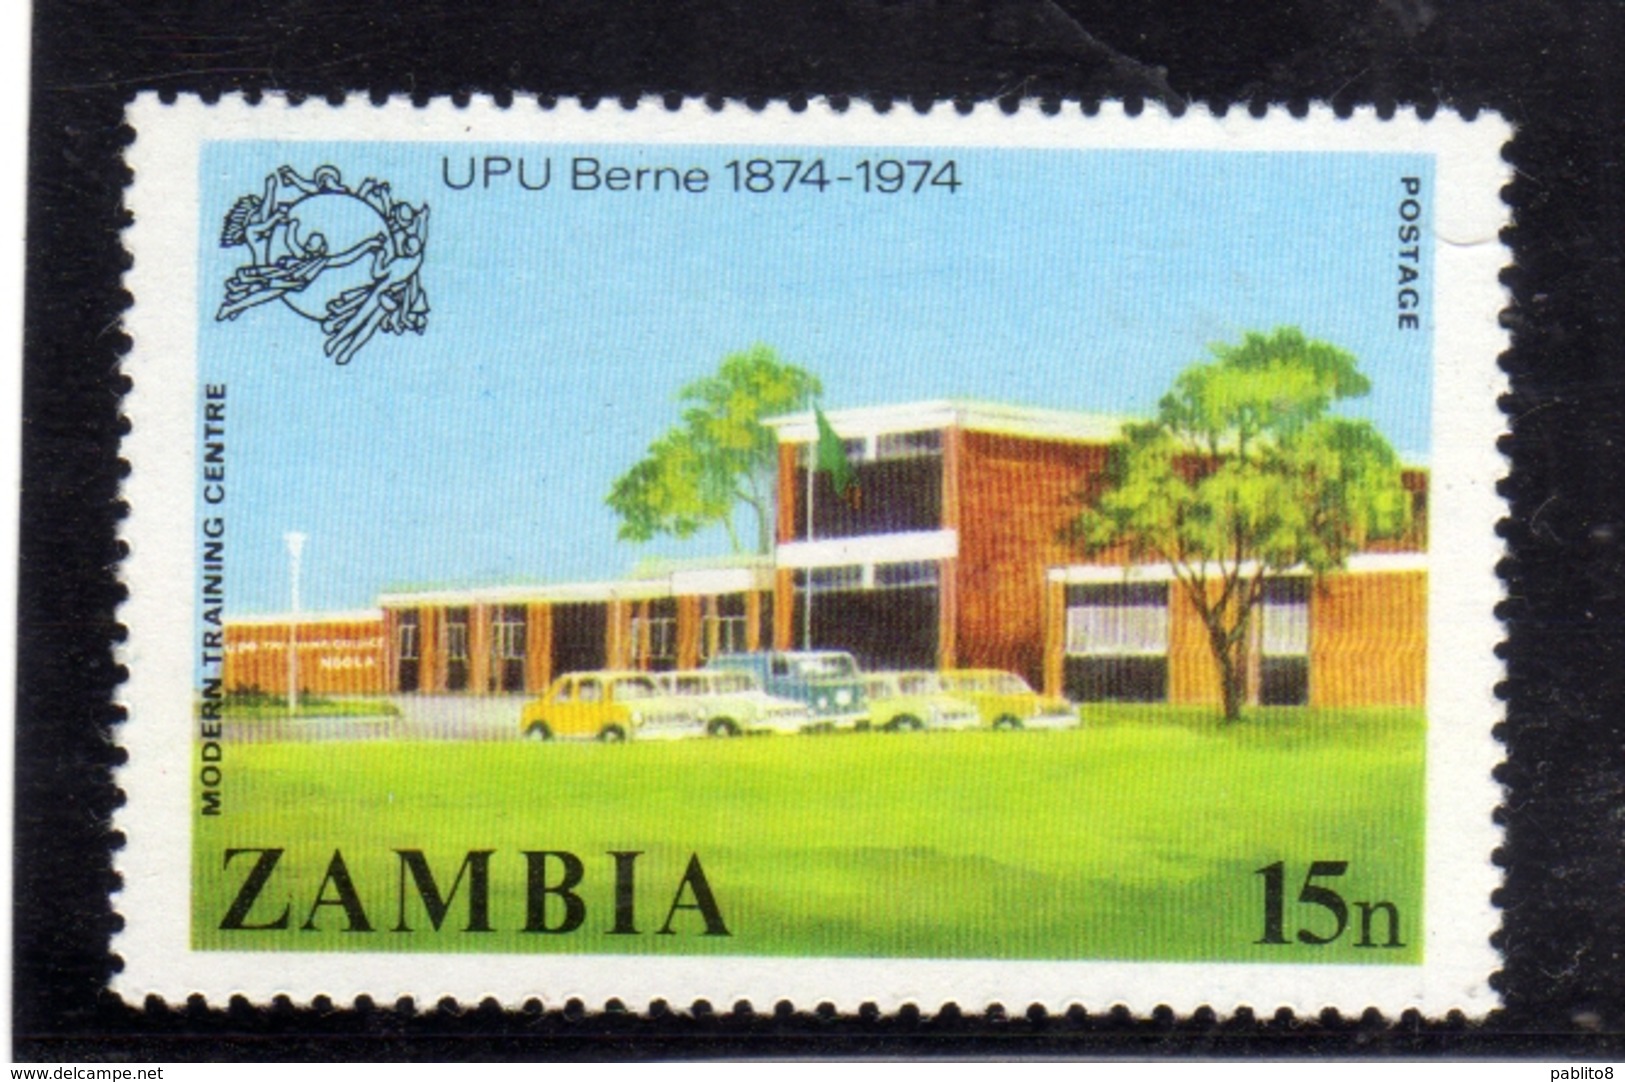 ZAMBIA 1974 UPU CENTENARY MODERN TRAINING CENTRE BUILDING 15n MNH - Zambia (1965-...)